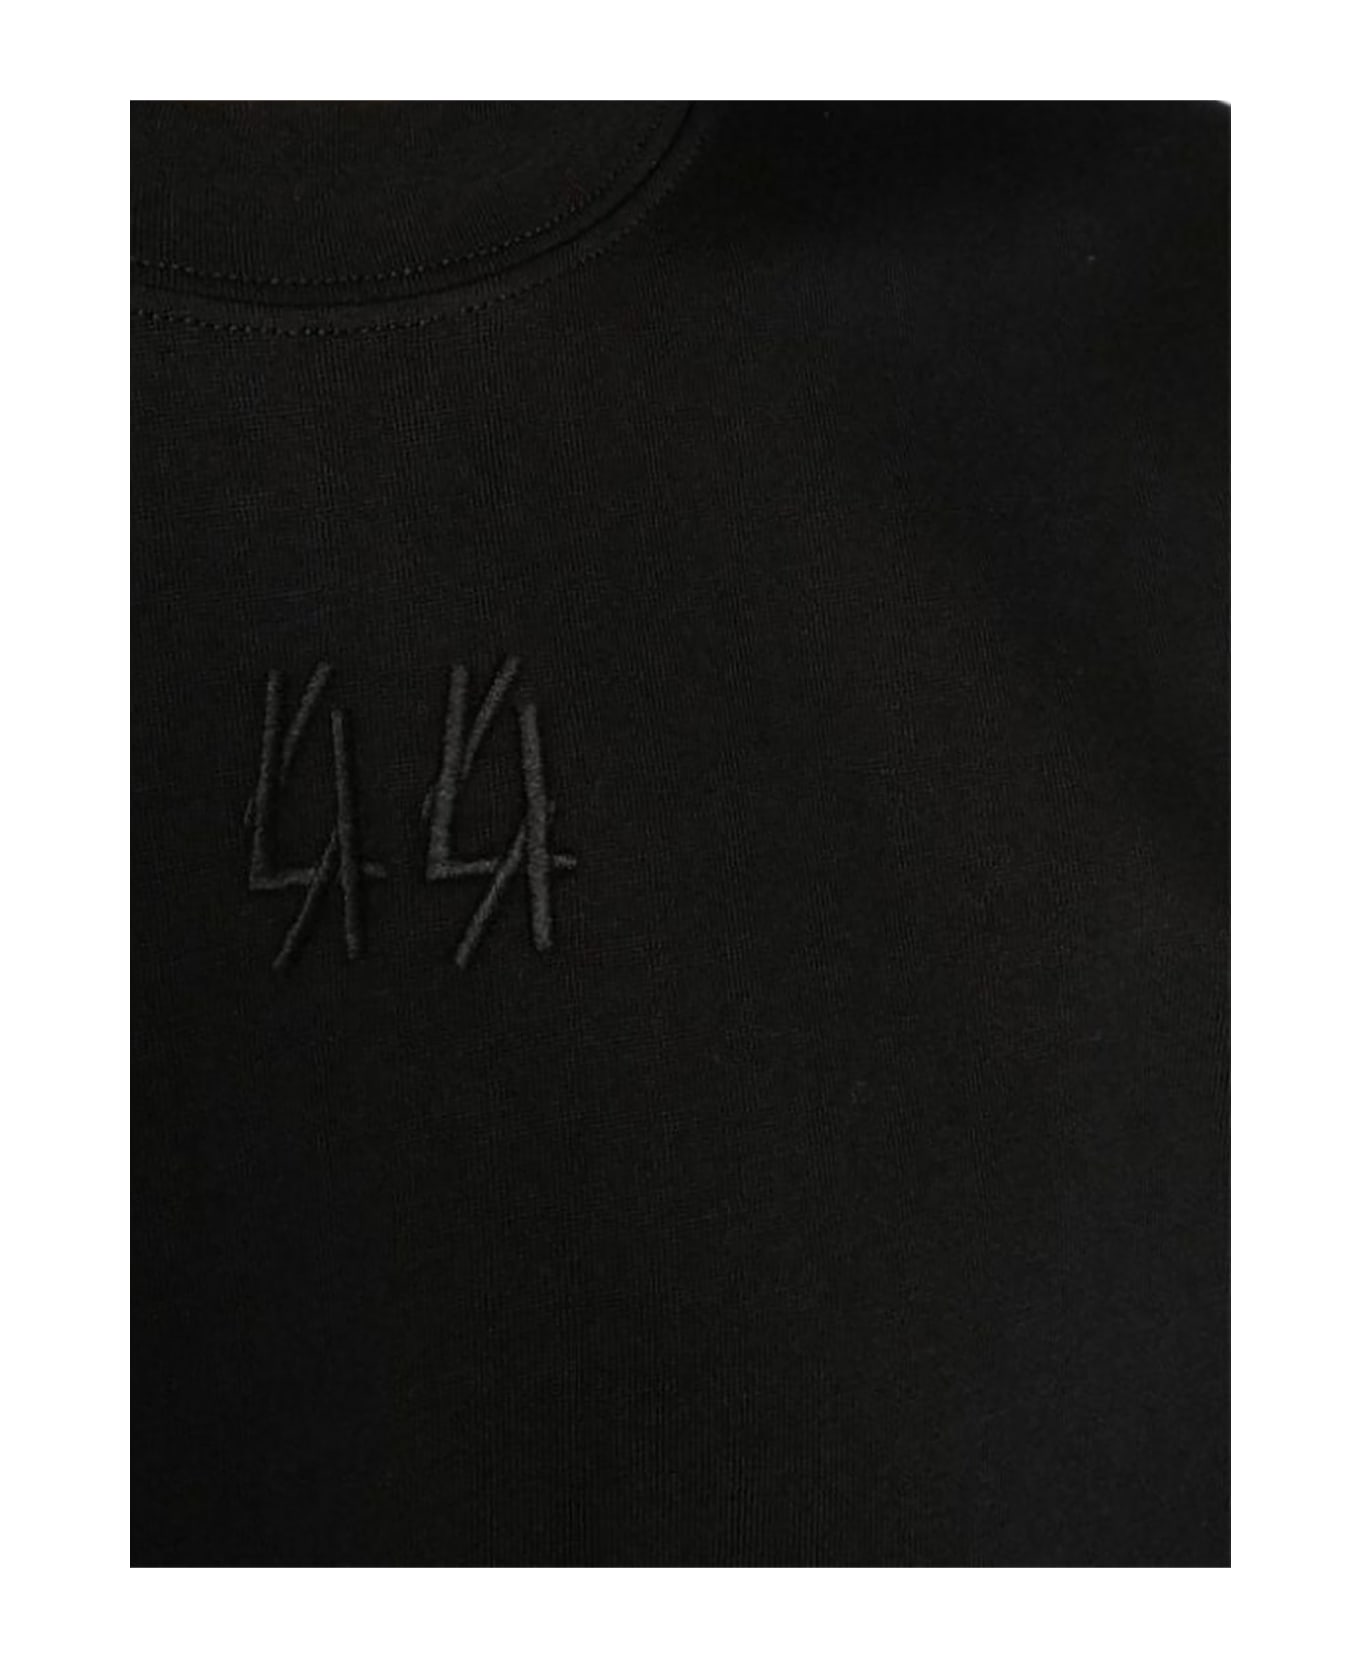 44 Label Group Black Cotton T-shirt